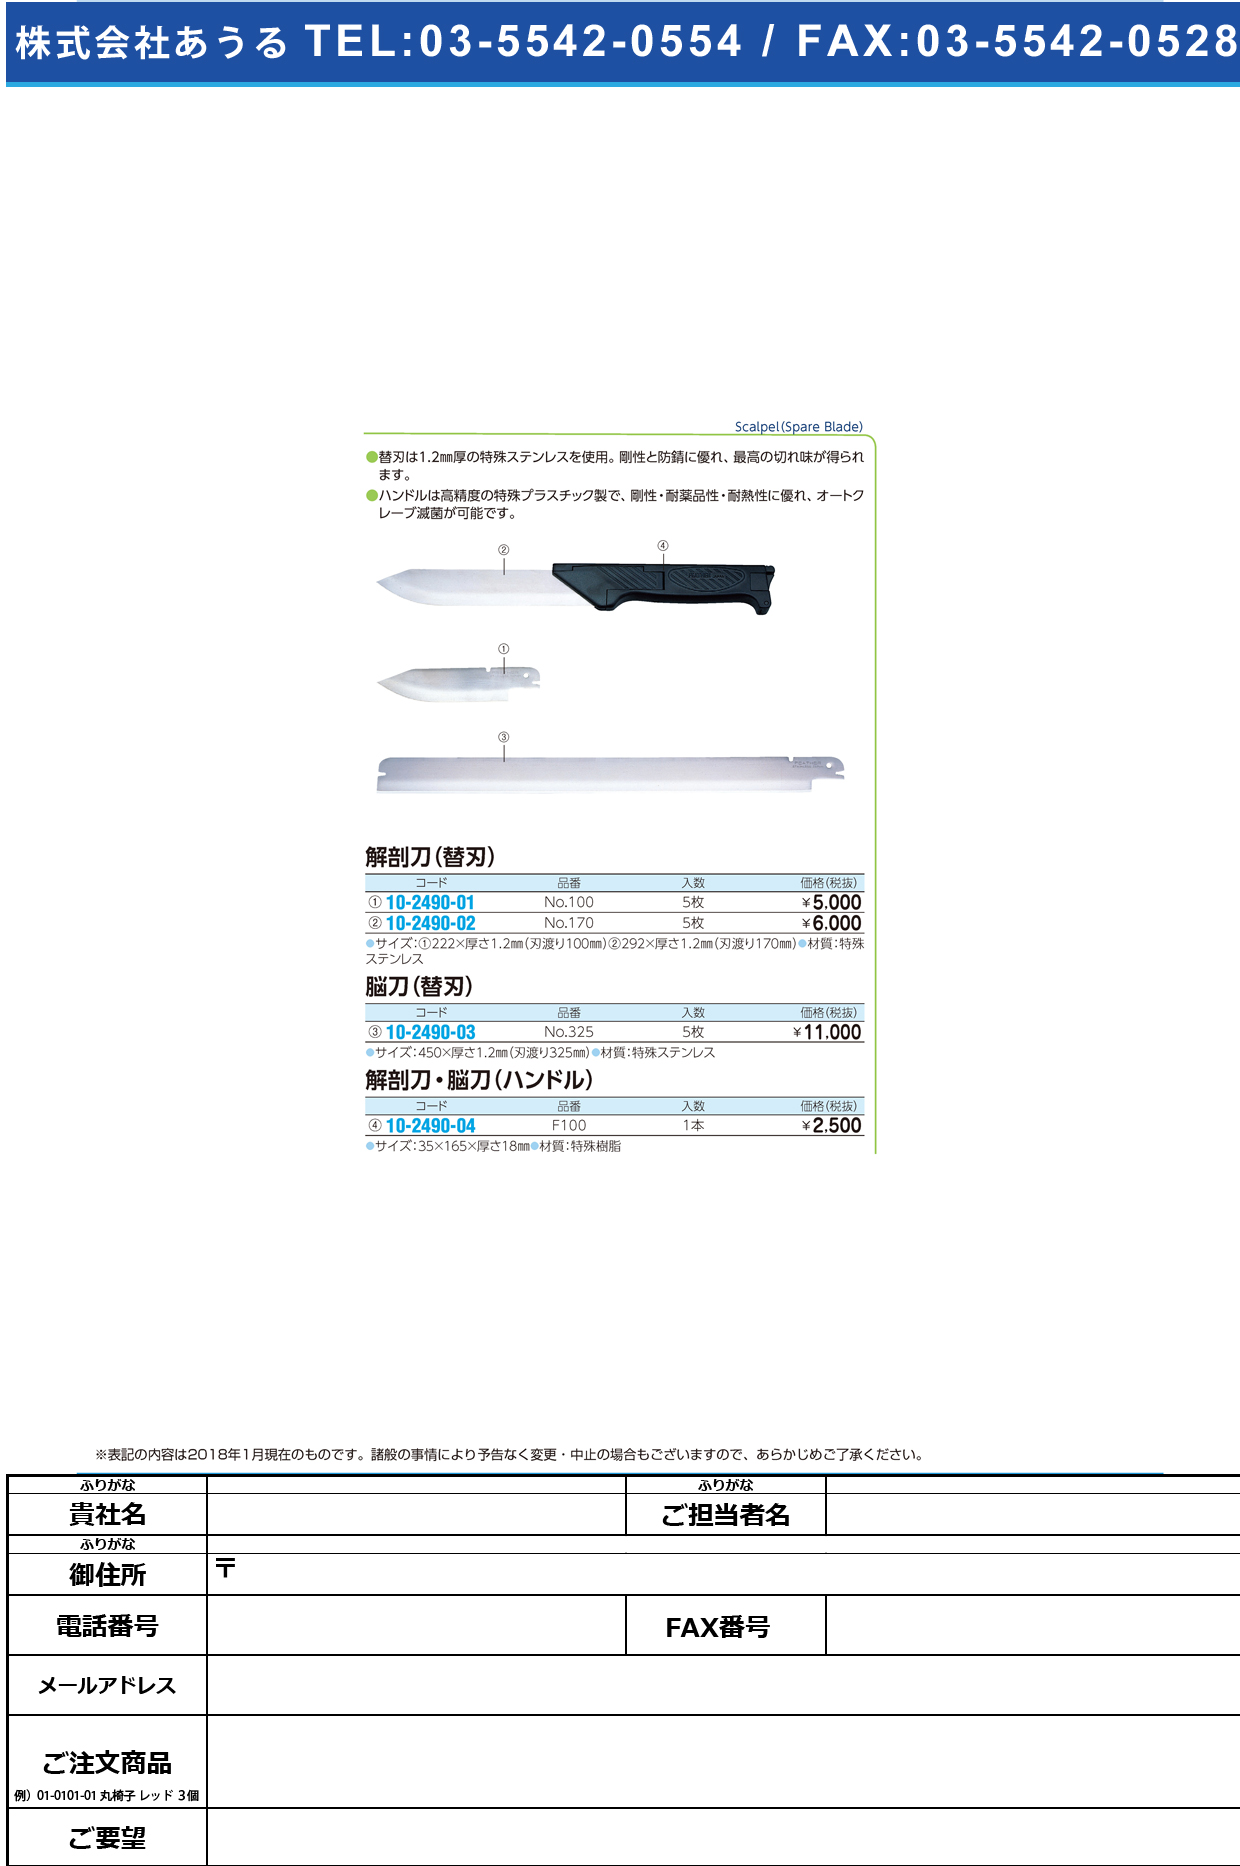 (10-2490-02)フェザー解剖刀替刃 NO.170(5ﾏｲｲﾘ) ﾌｪｻﾞｰｶｲﾎﾞｳﾄｳｶｴﾊﾞ【1箱単位】【2018年カタログ商品】